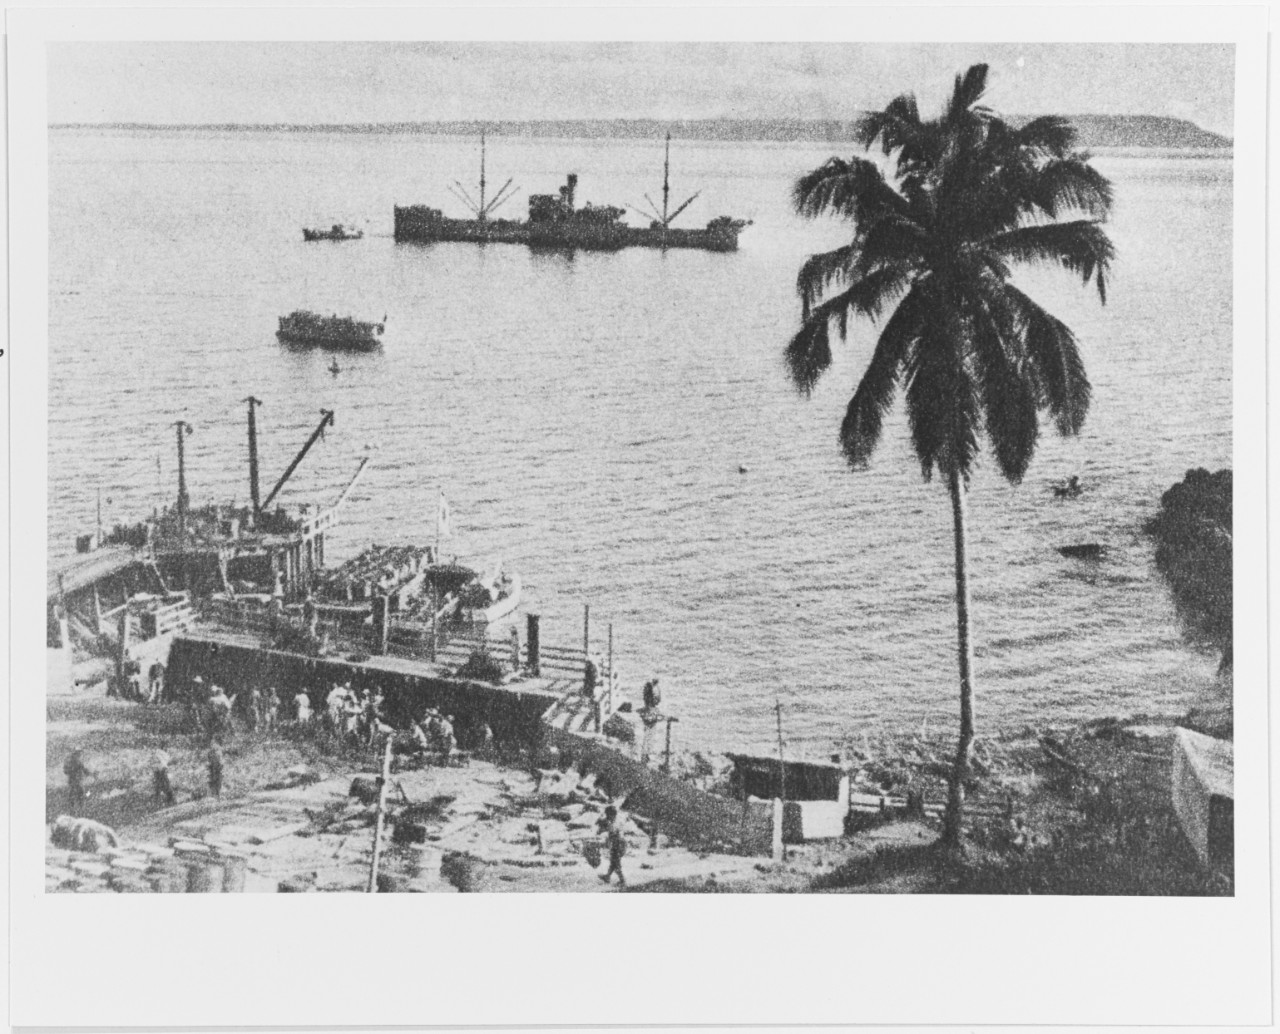 Philippines invasion, 1941-1942.